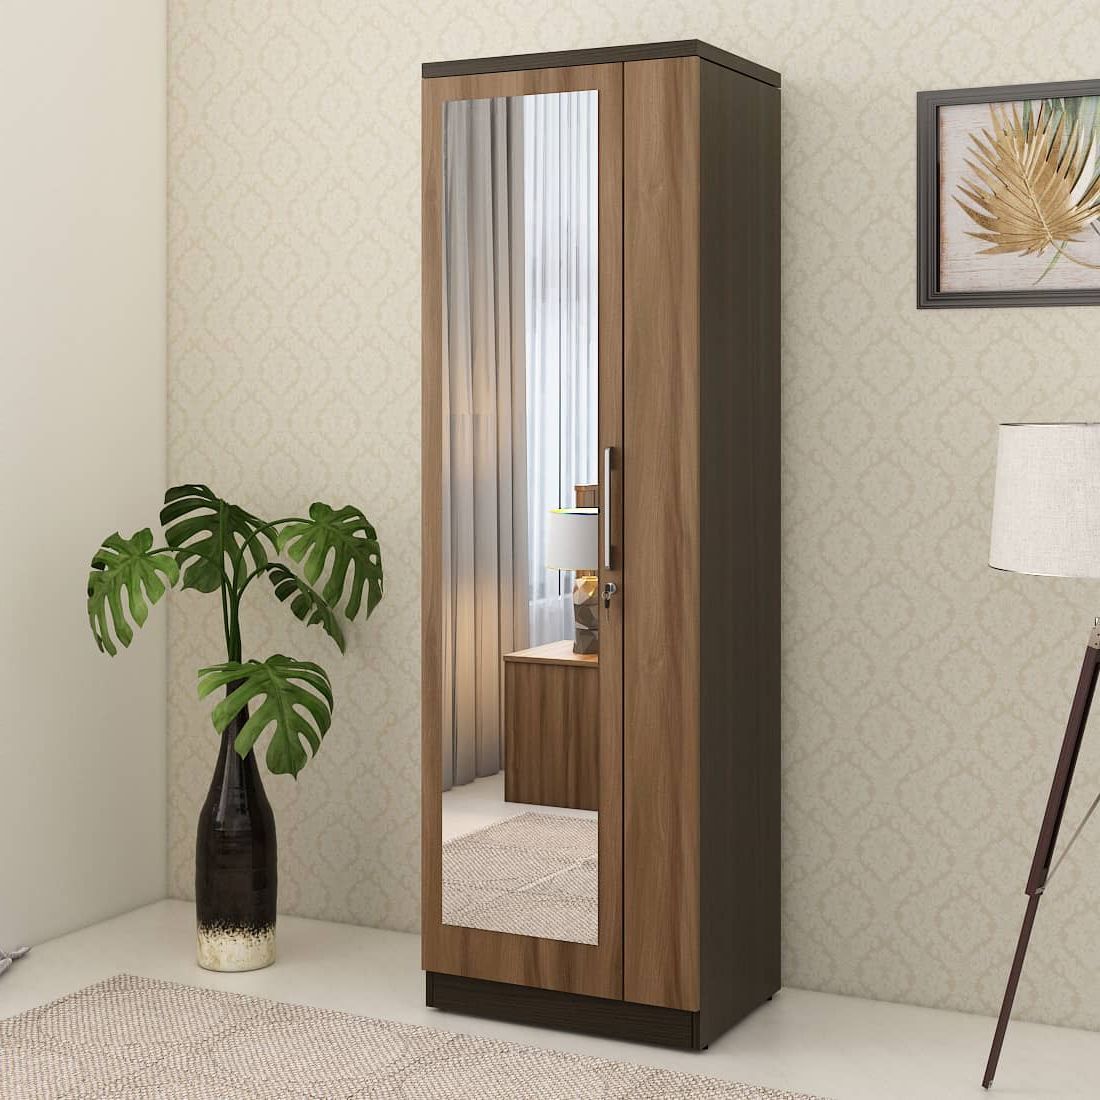 Kosmo Ken 1 Door Wardrobe With Mirror Walnut Bronze Woodpore | Spacewood  Ecommerce Pertaining To Single Door Mirrored Wardrobes (Gallery 2 of 20)